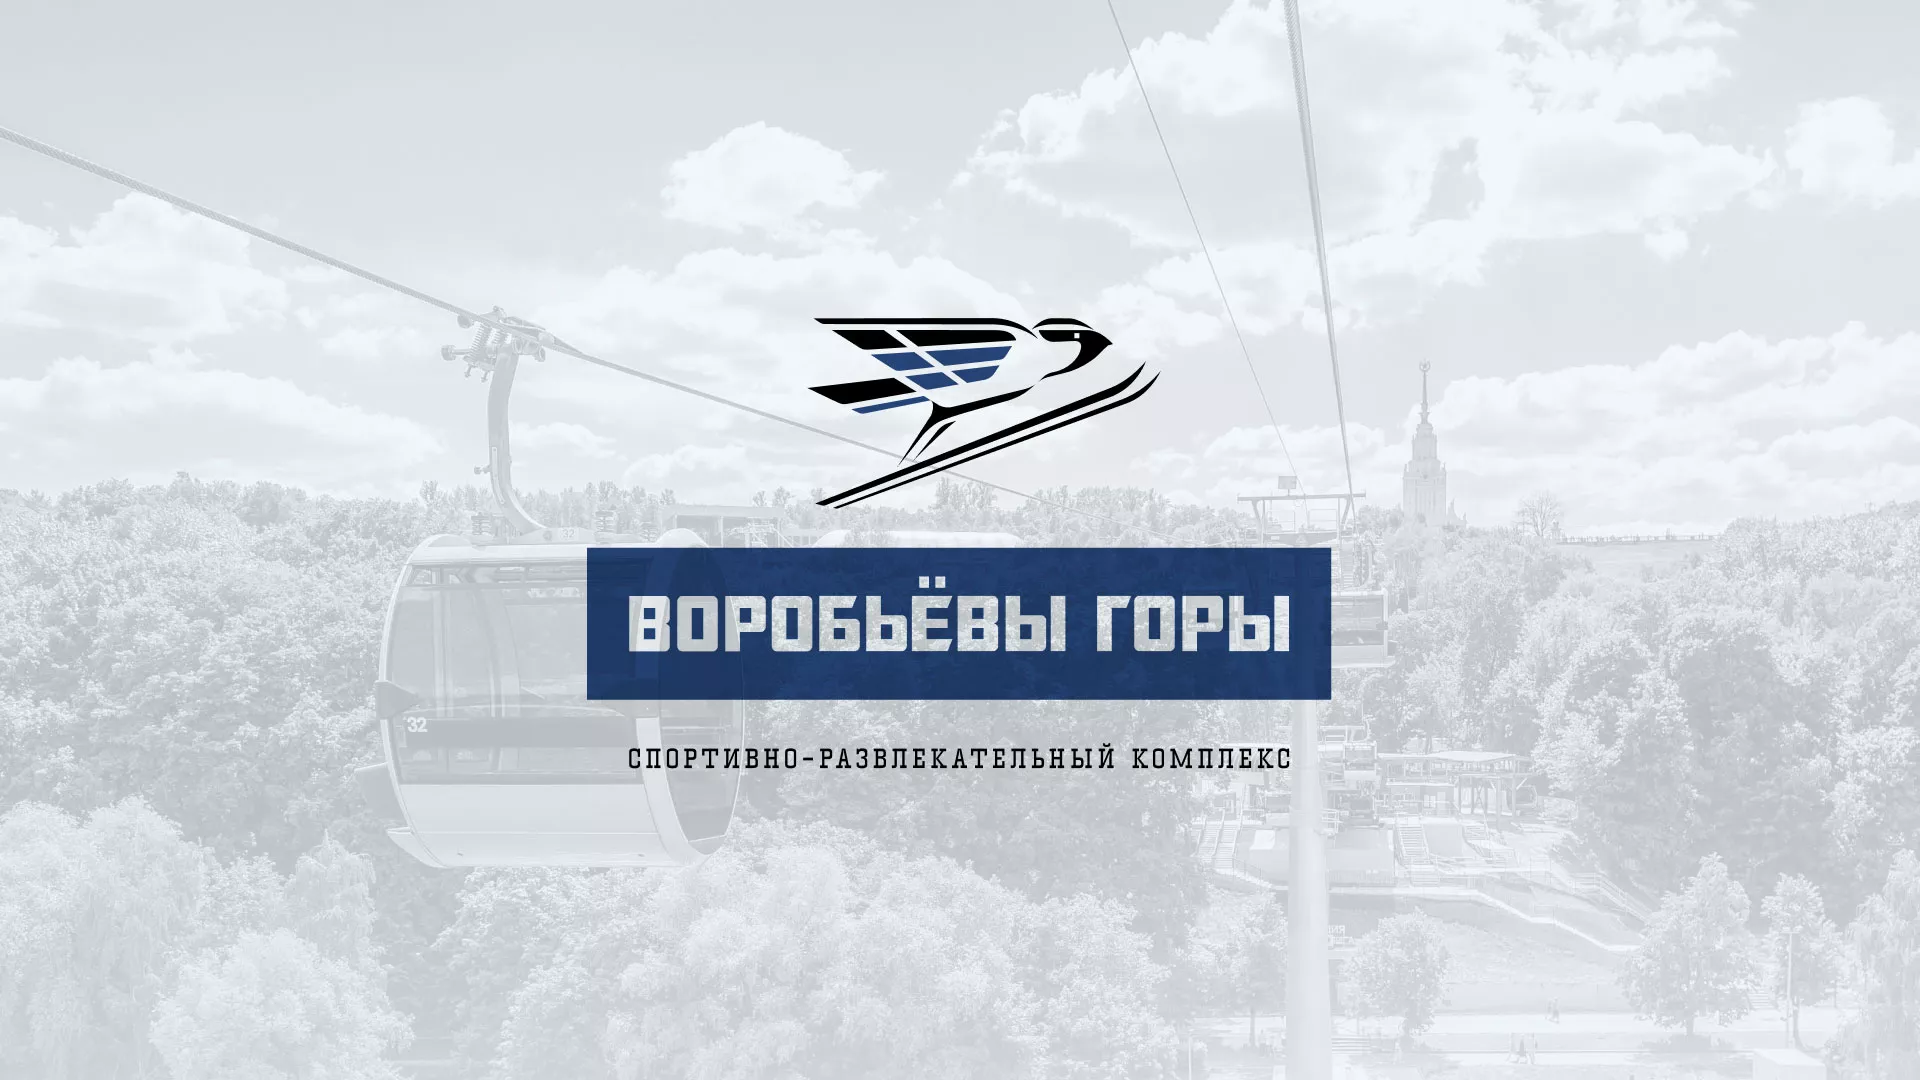 Разработка сайта в Славске для спортивно-развлекательного комплекса «Воробьёвы горы»